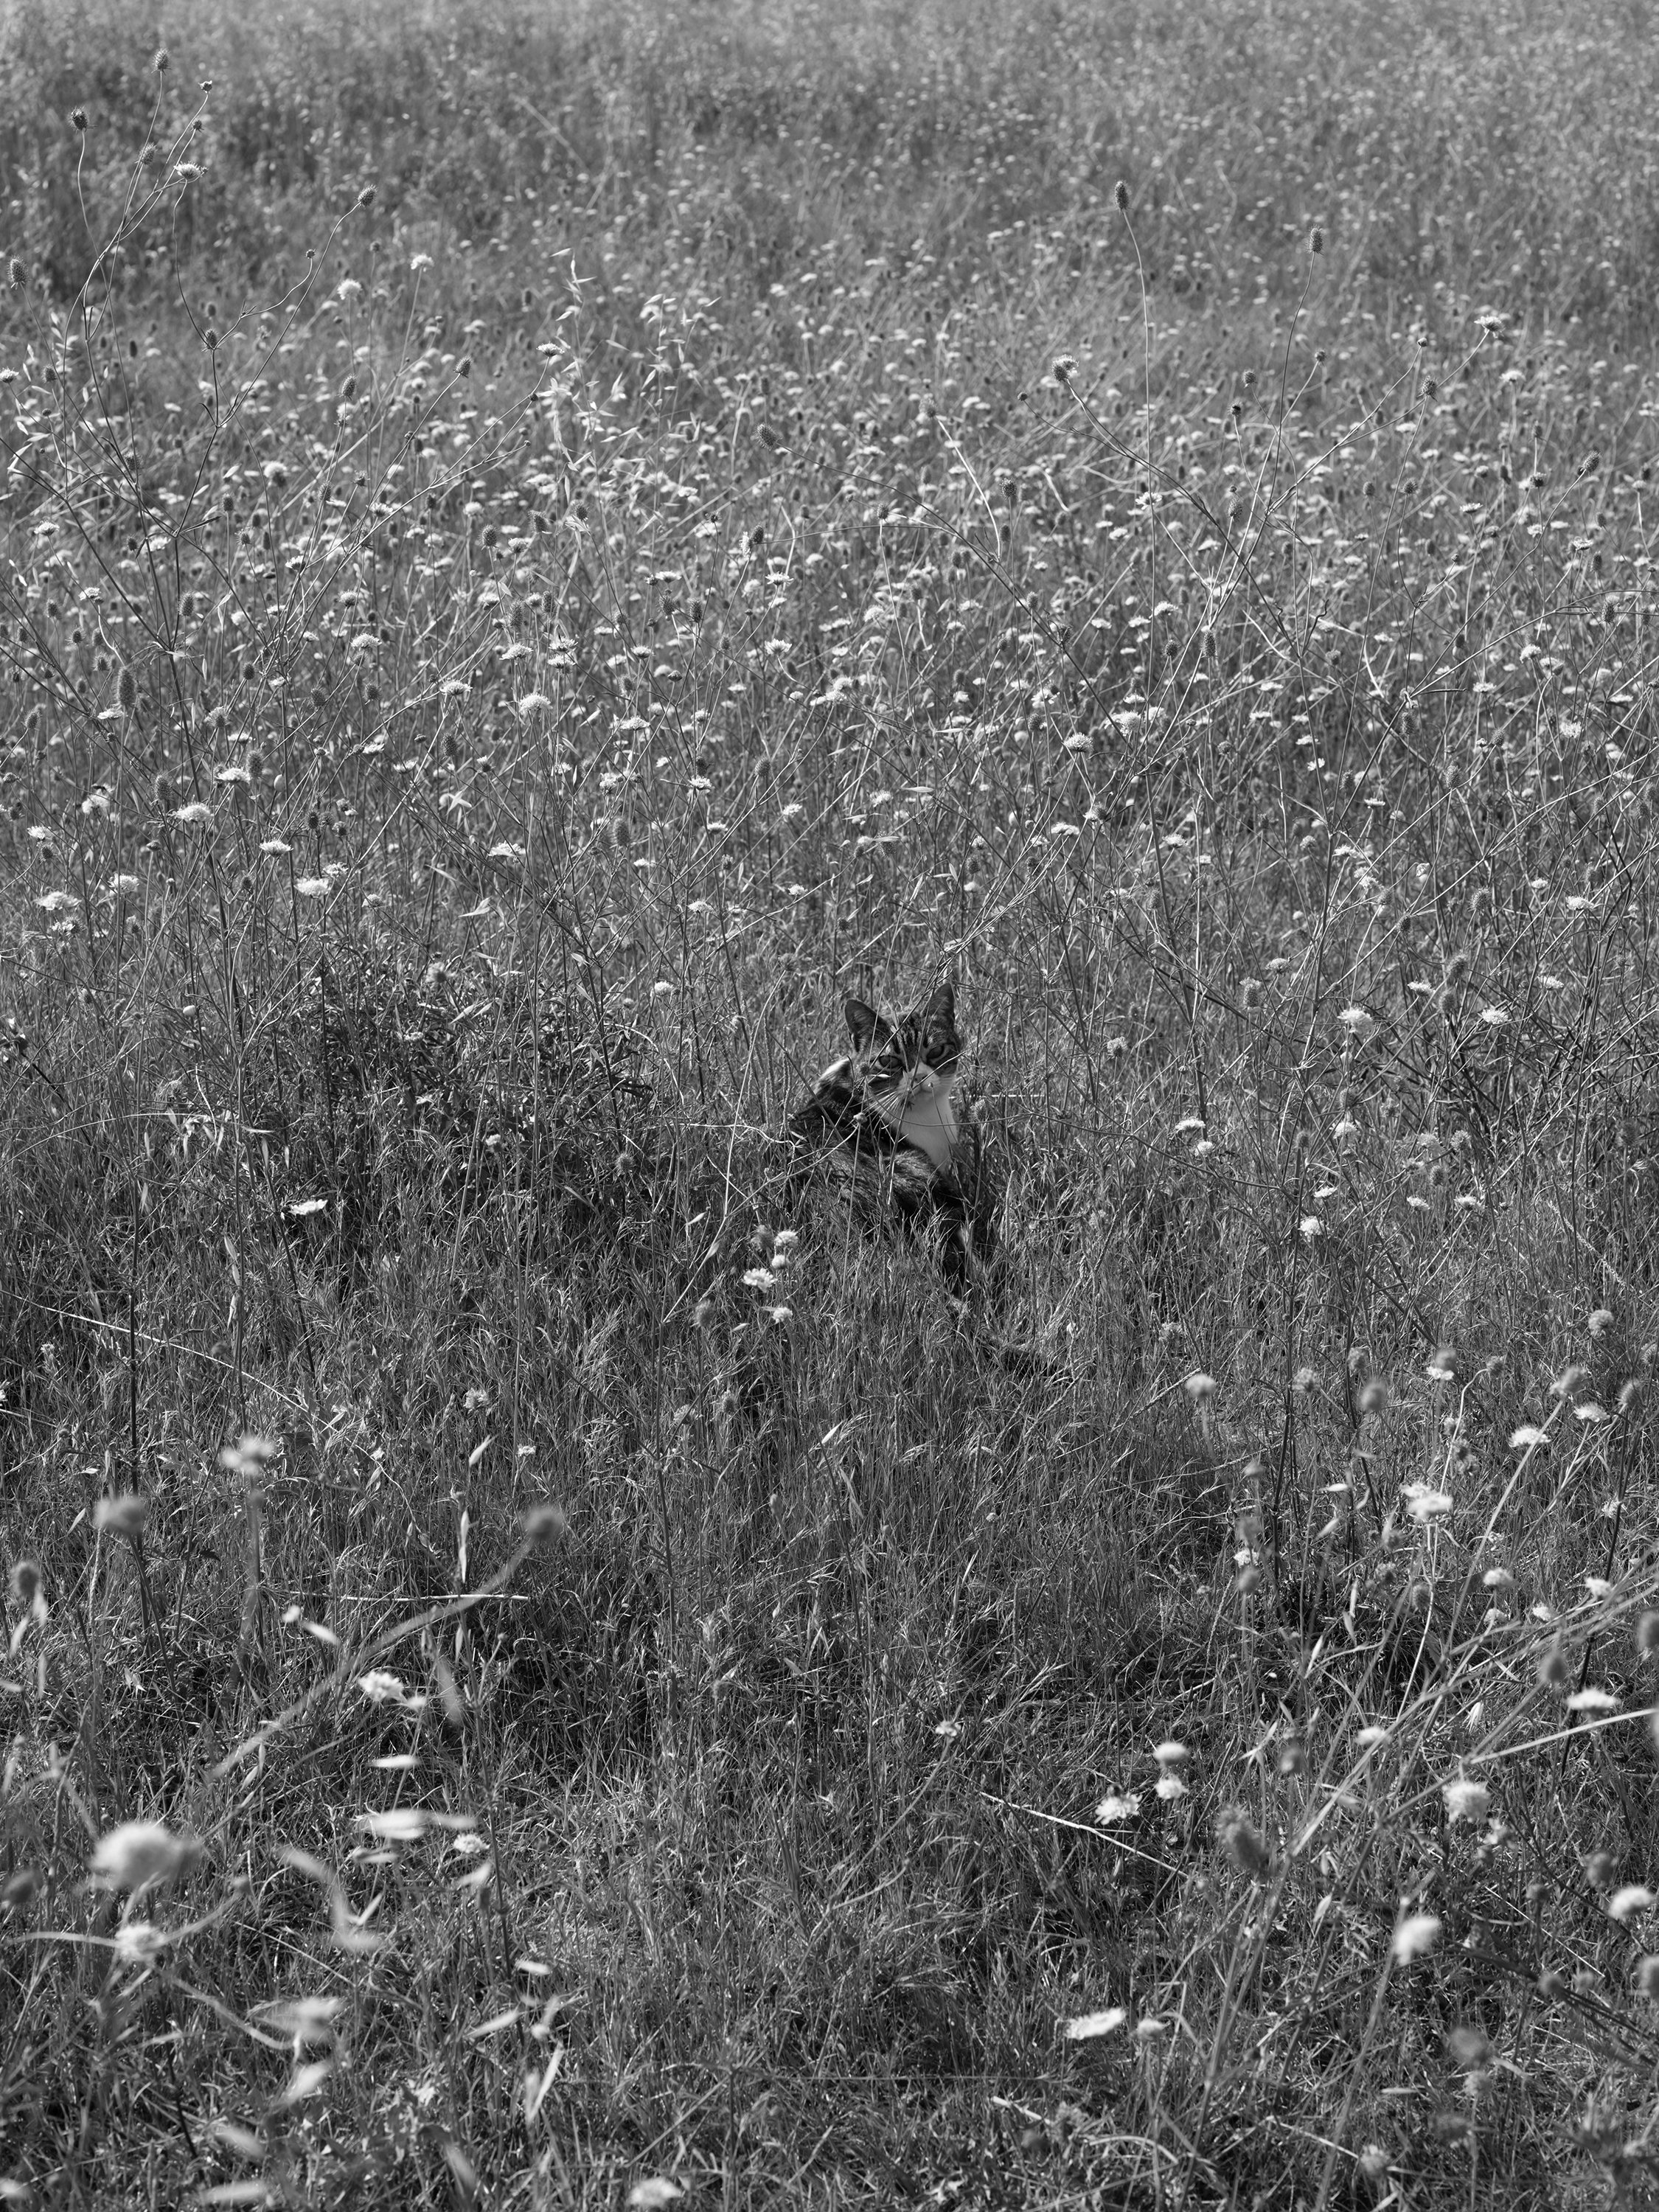 Cat in Field.jpg